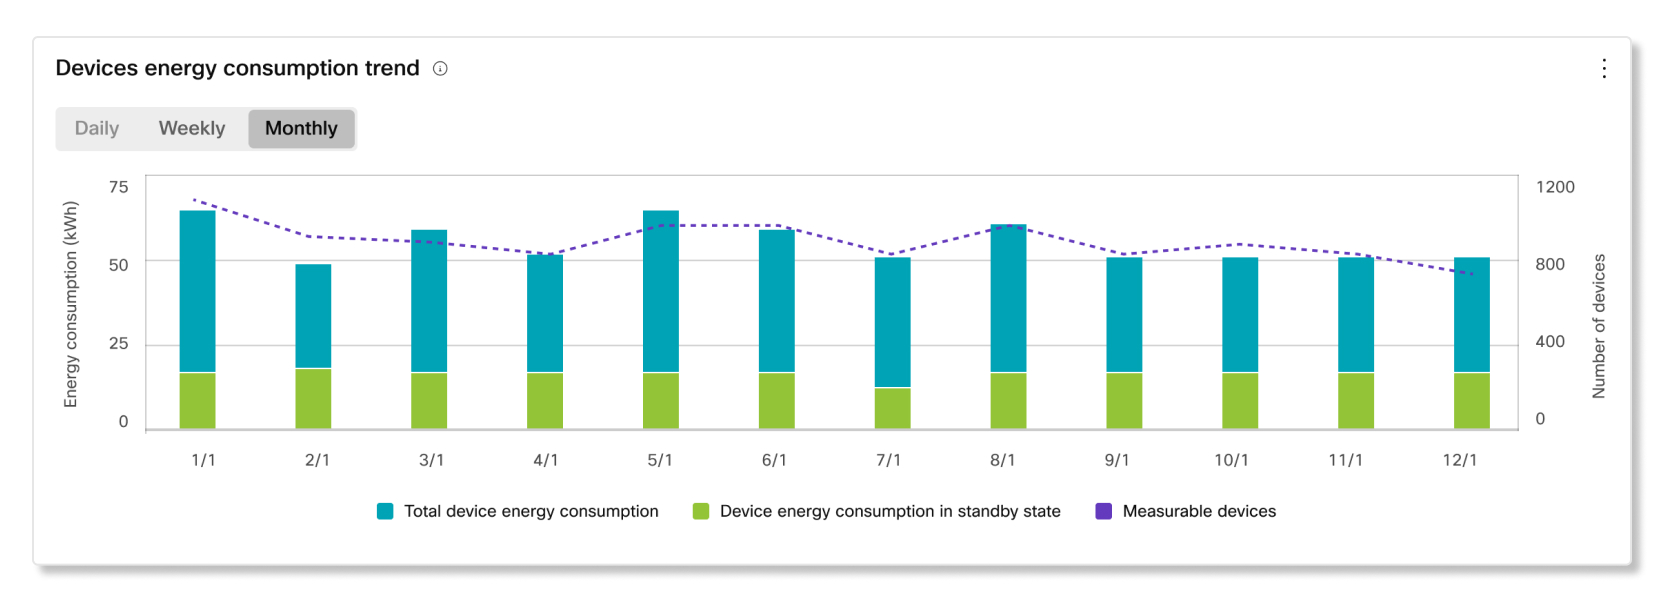 可持续发展分析中的设备能源消耗趋势